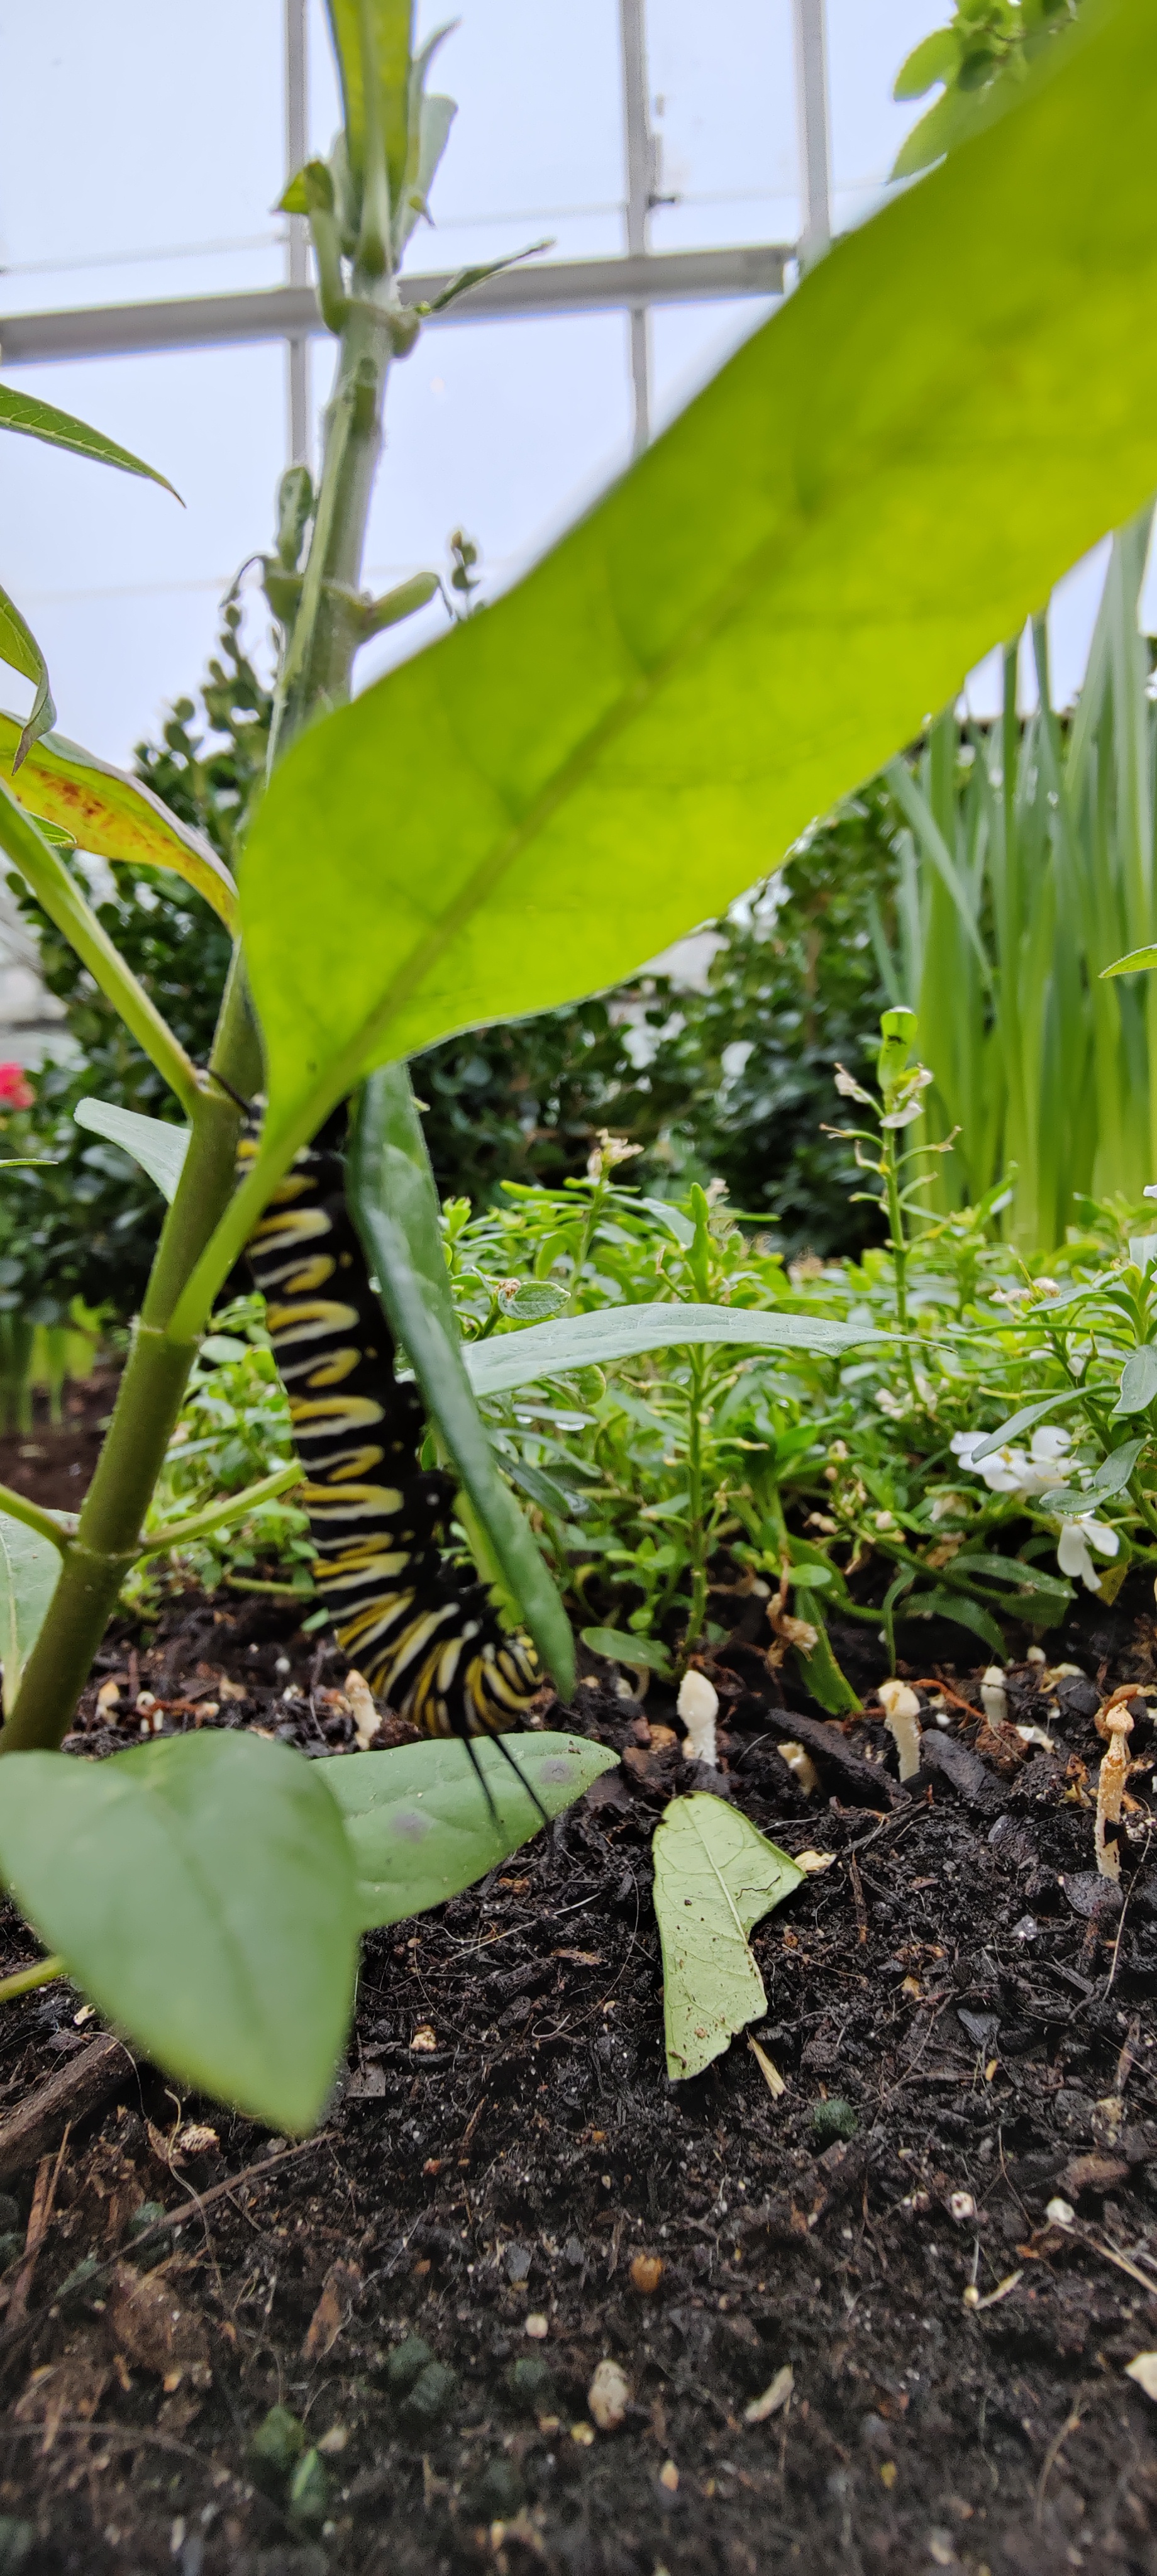 Monarch caterpillar!